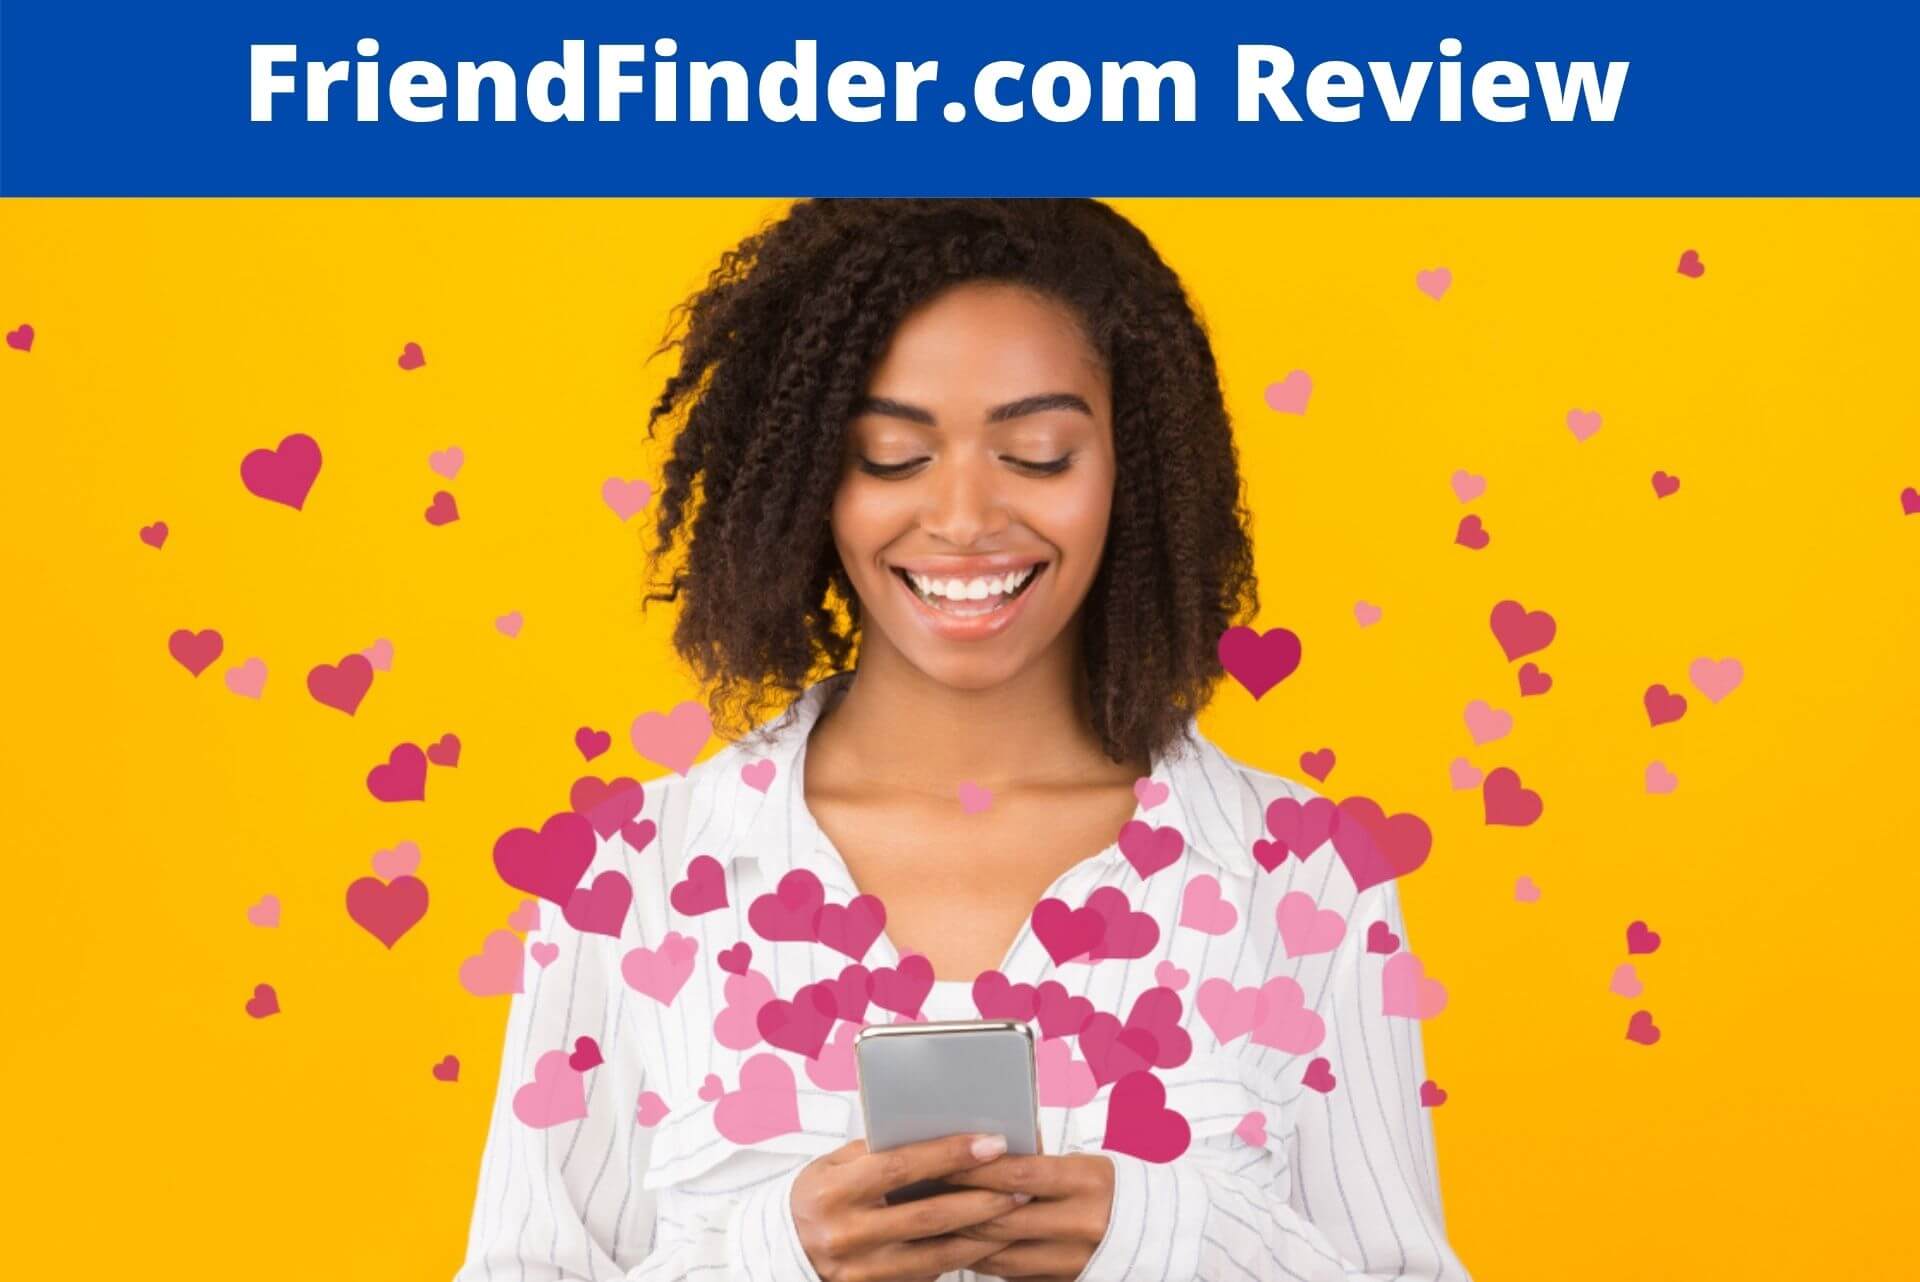 FriendFinder.com Review